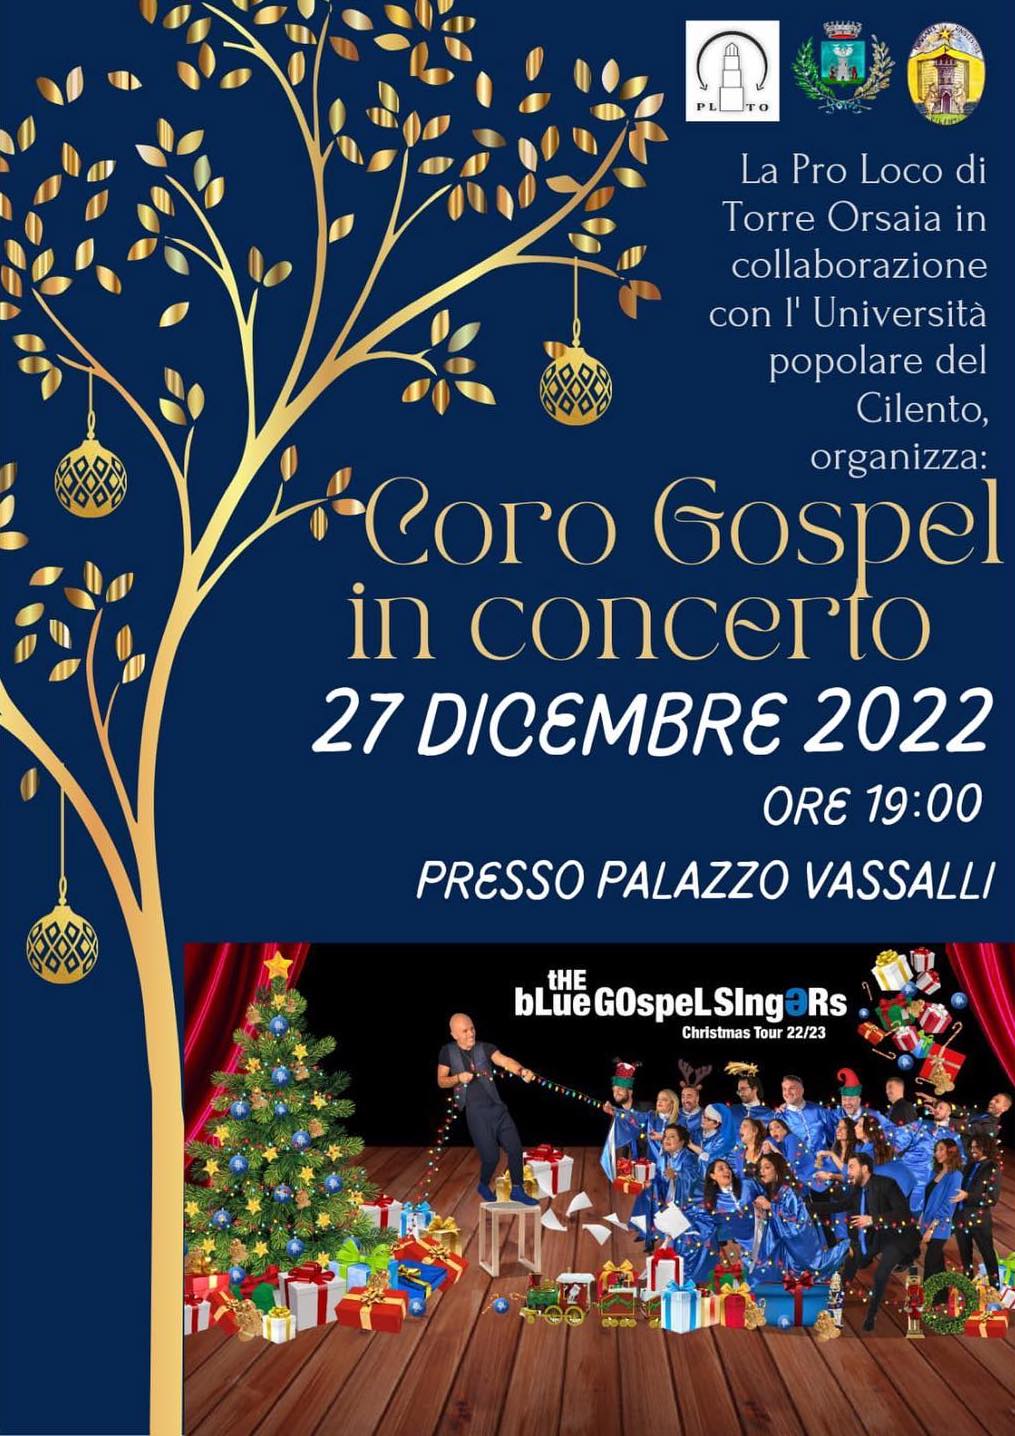 Torre Orsaia, a Palazzo Vassalli il concerto di Natale con ”The Blue Gospel Singers” 